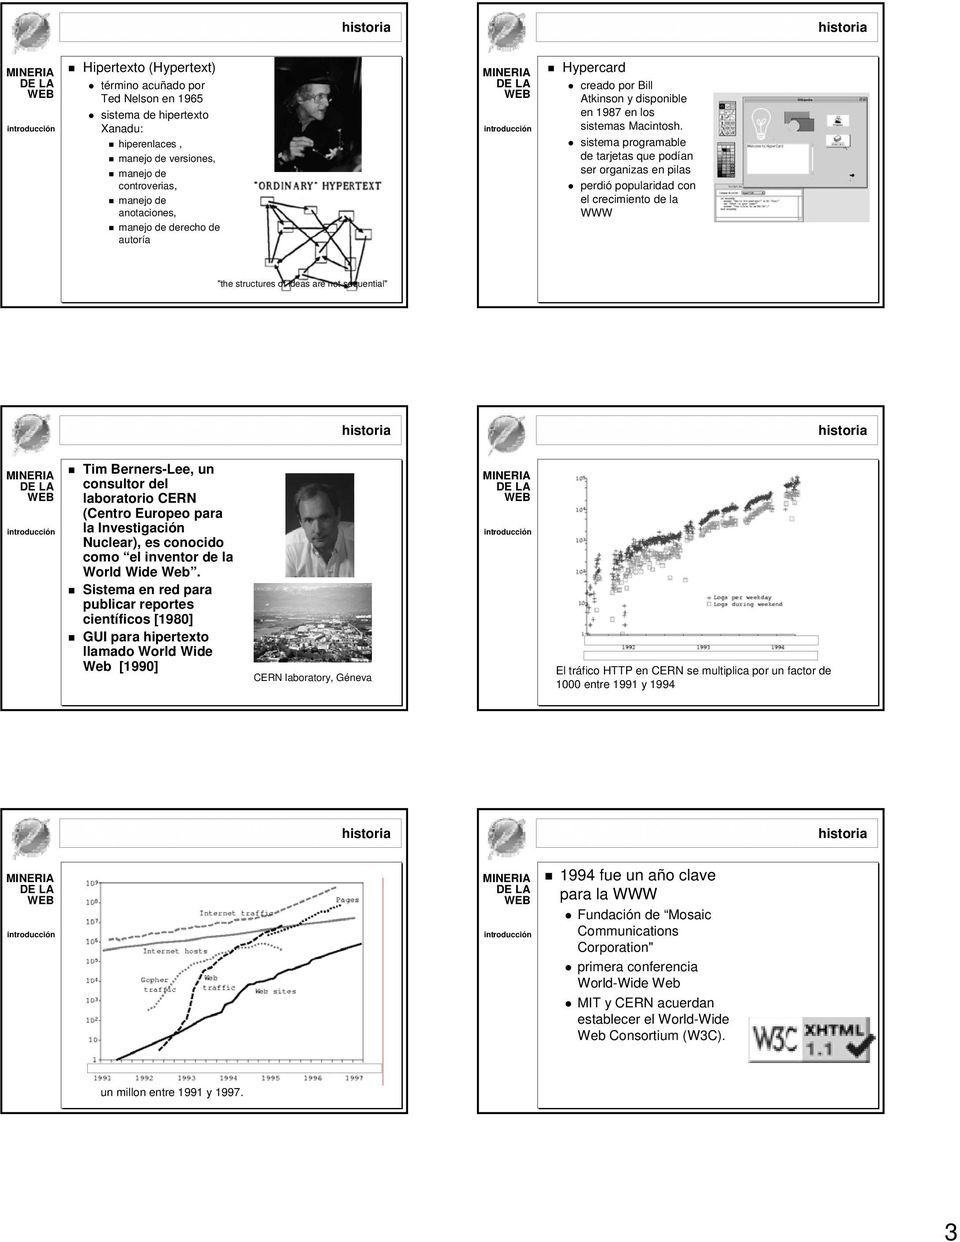 sistema programable de tarjetas que podían ser organizas en pilas perdió popularidad con el crecimiento de la WWW "the structures of ideas are not sequential" Tim Berners-Lee, un consultor del